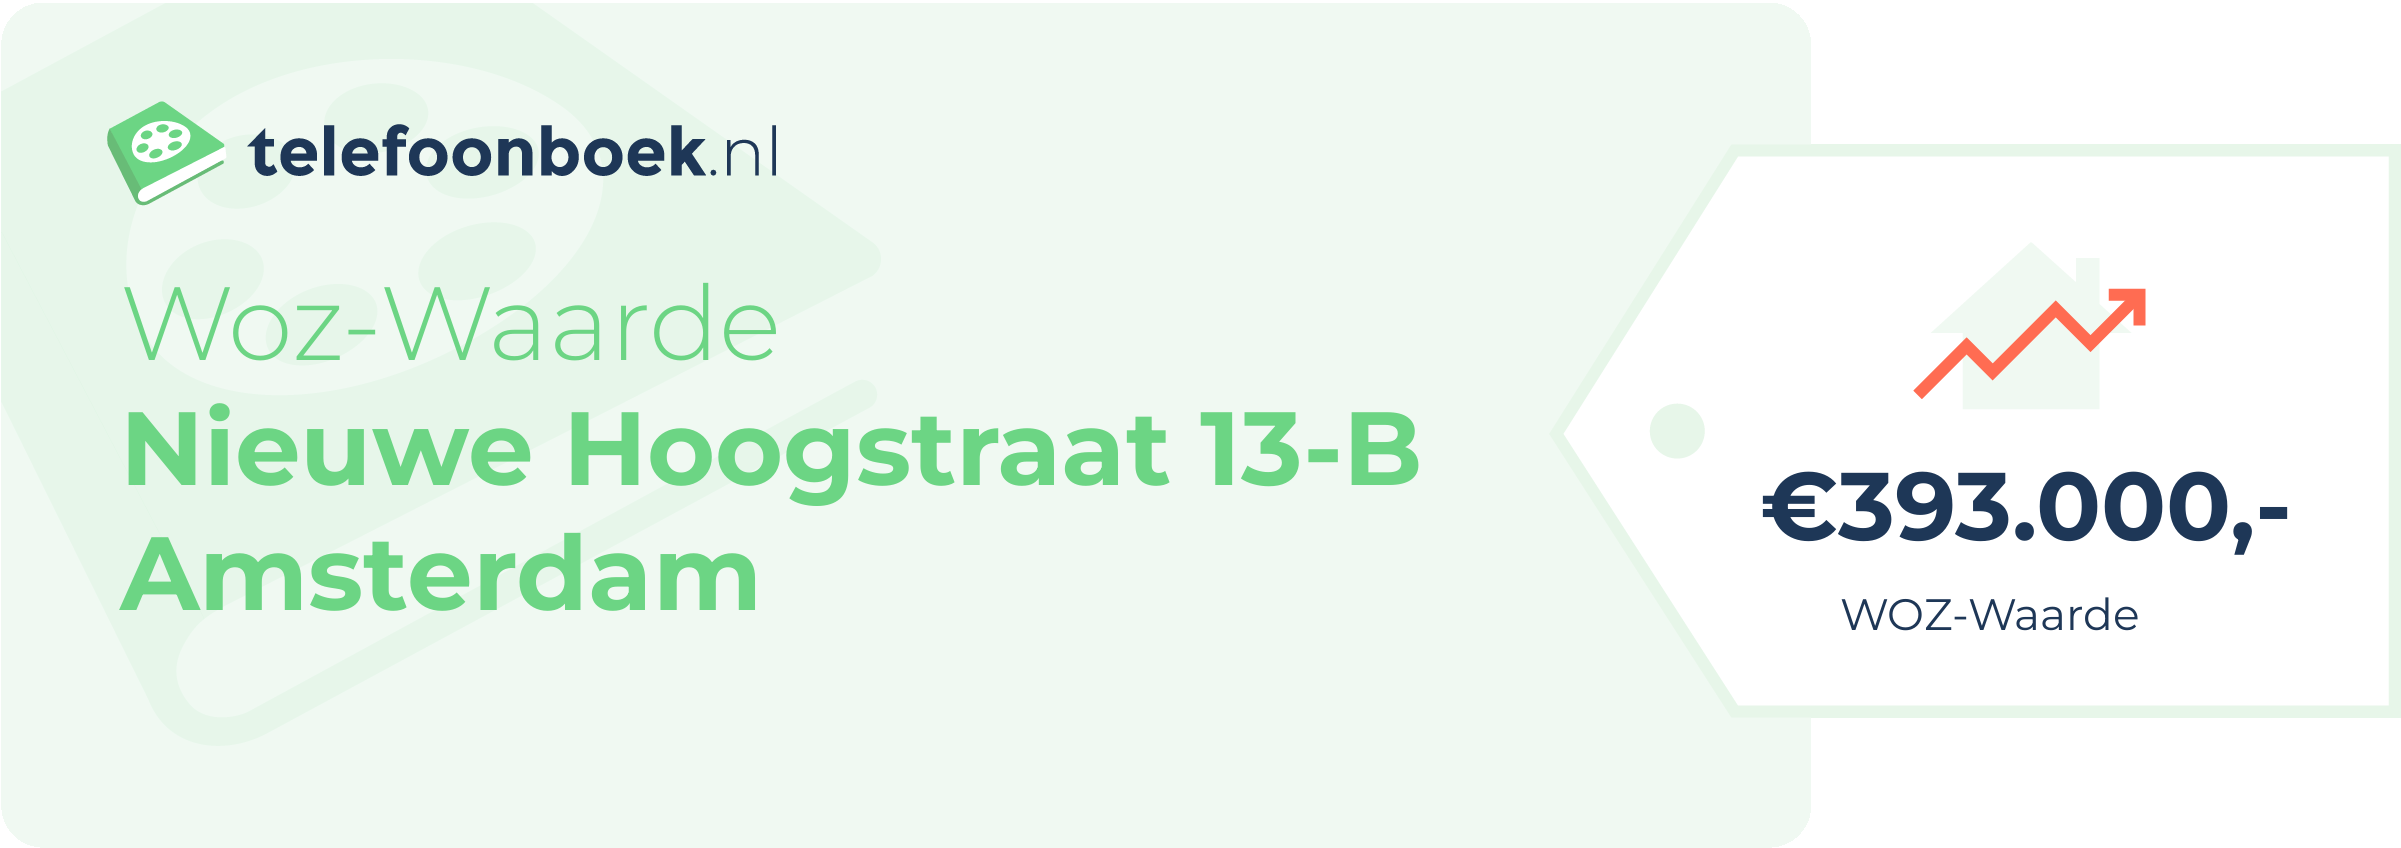 WOZ-waarde Nieuwe Hoogstraat 13-B Amsterdam